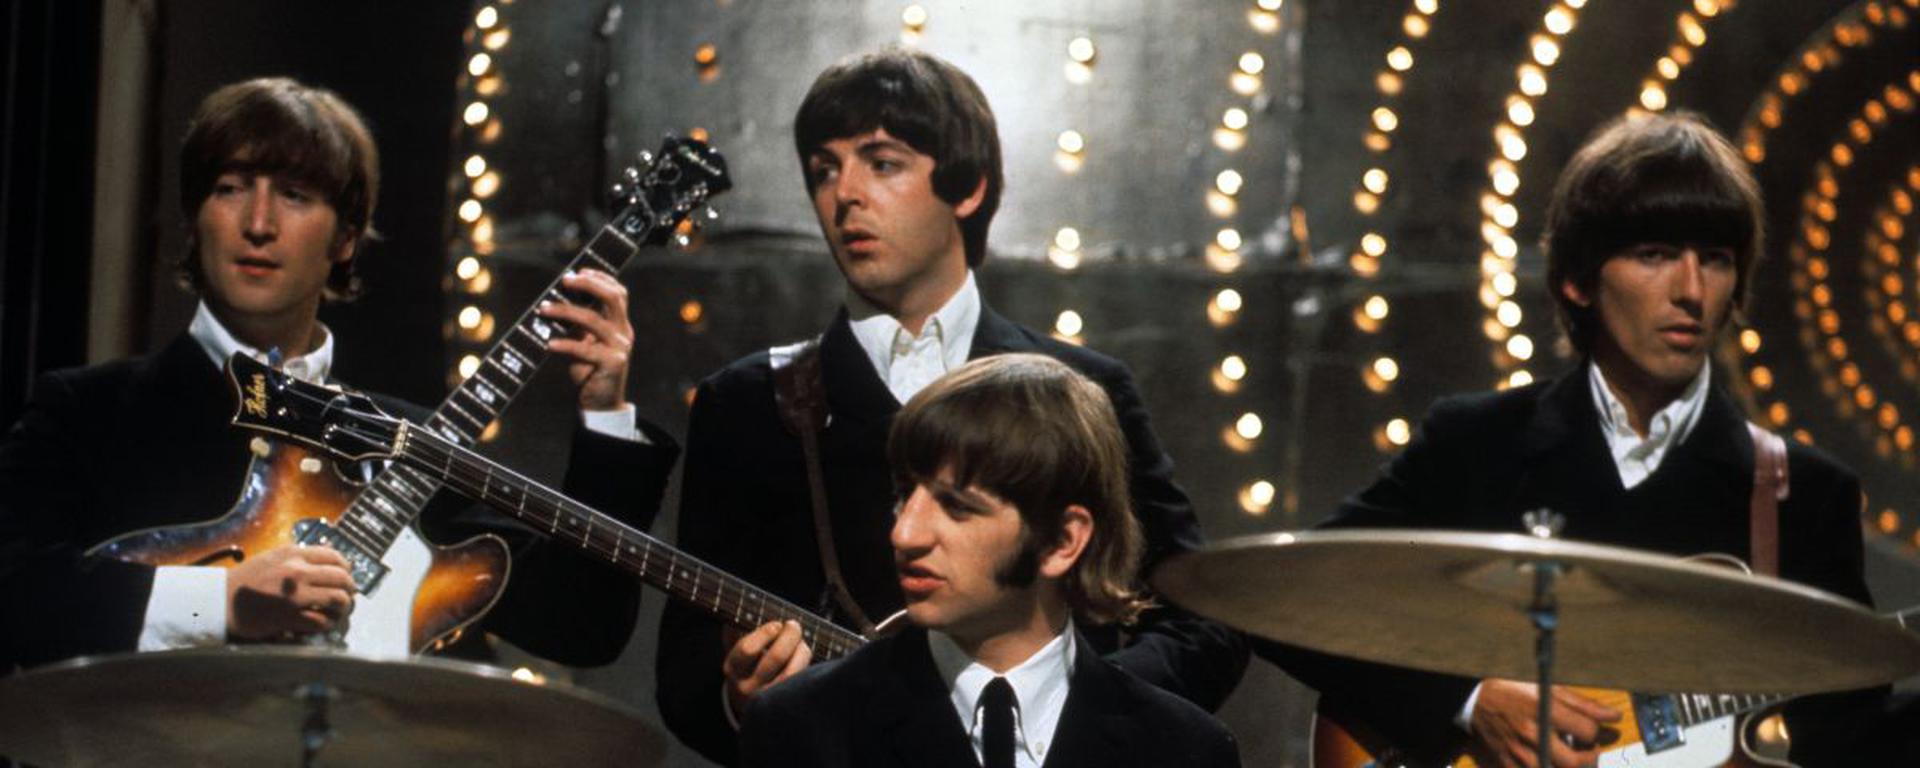 Los Beatles lanzan su canción final gracias a la inteligencia artificial: la letra expresa melancolía por la ausencia